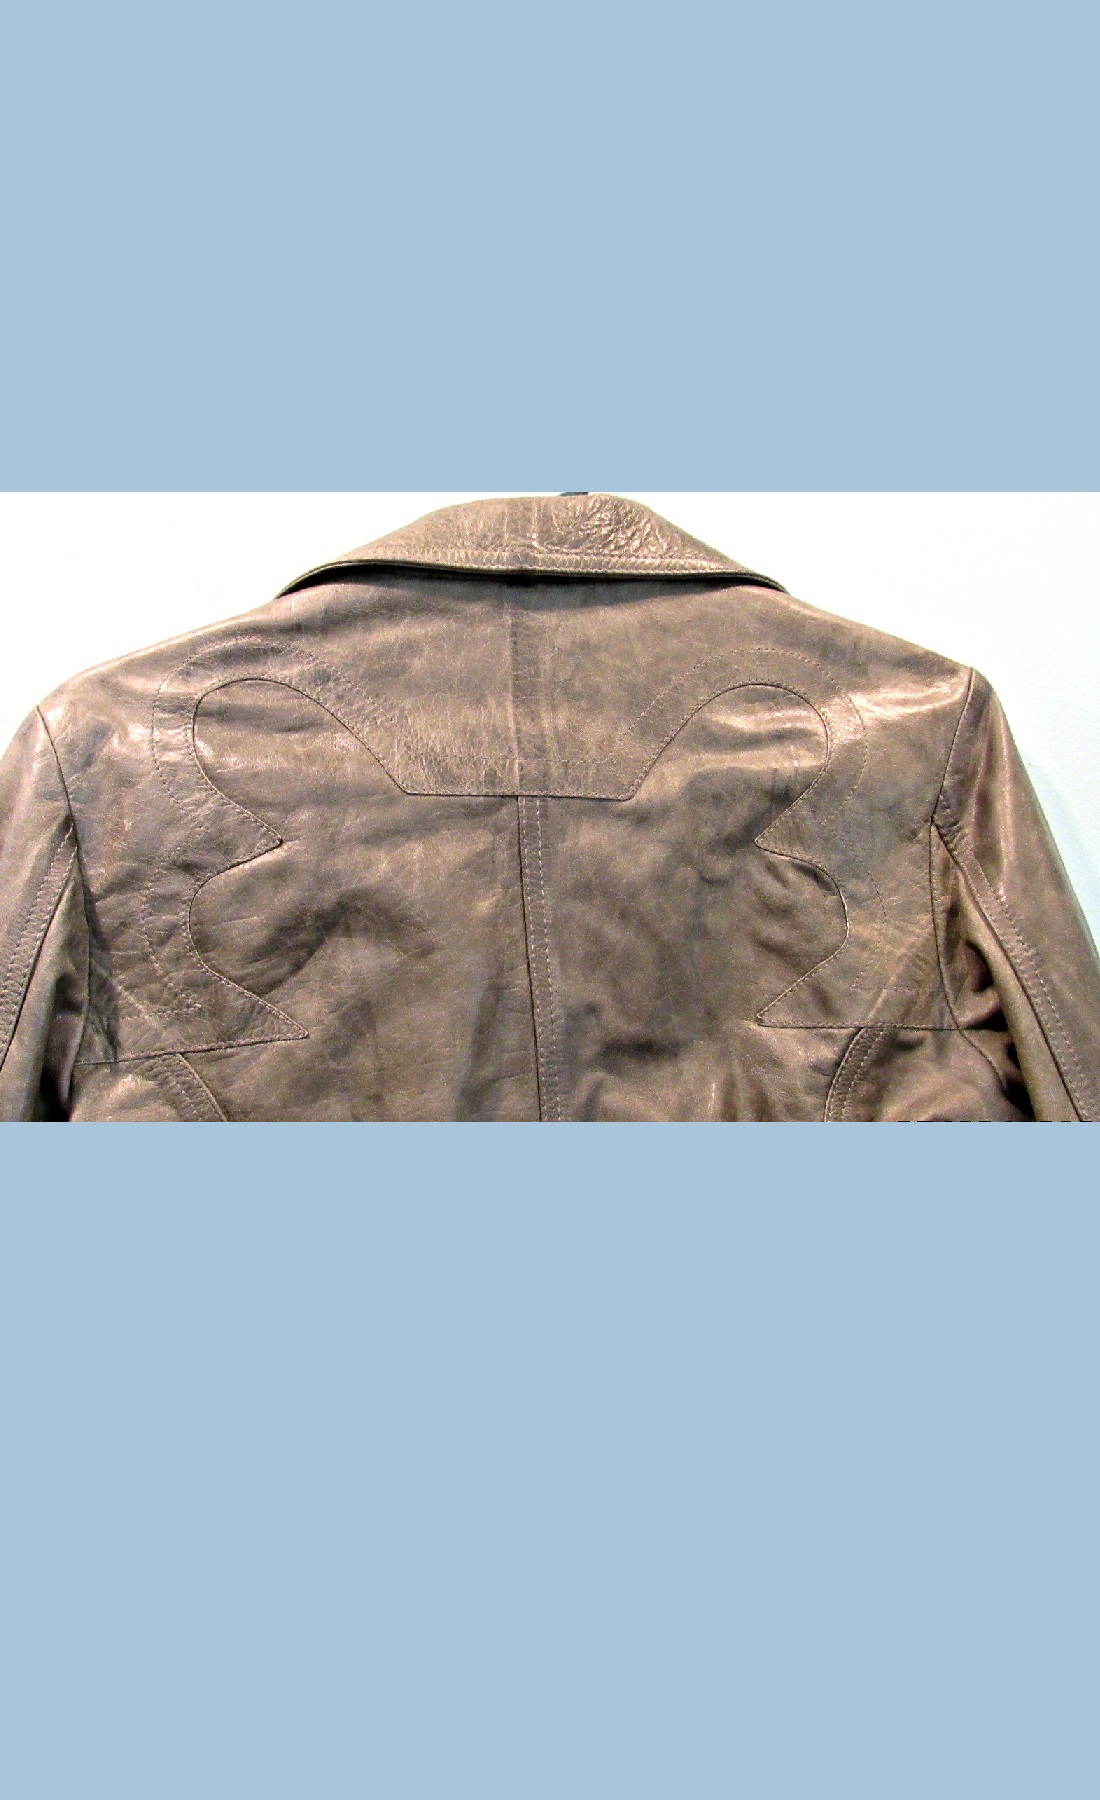 Leather Women's Waist Jacket - Diesel | Ouslet